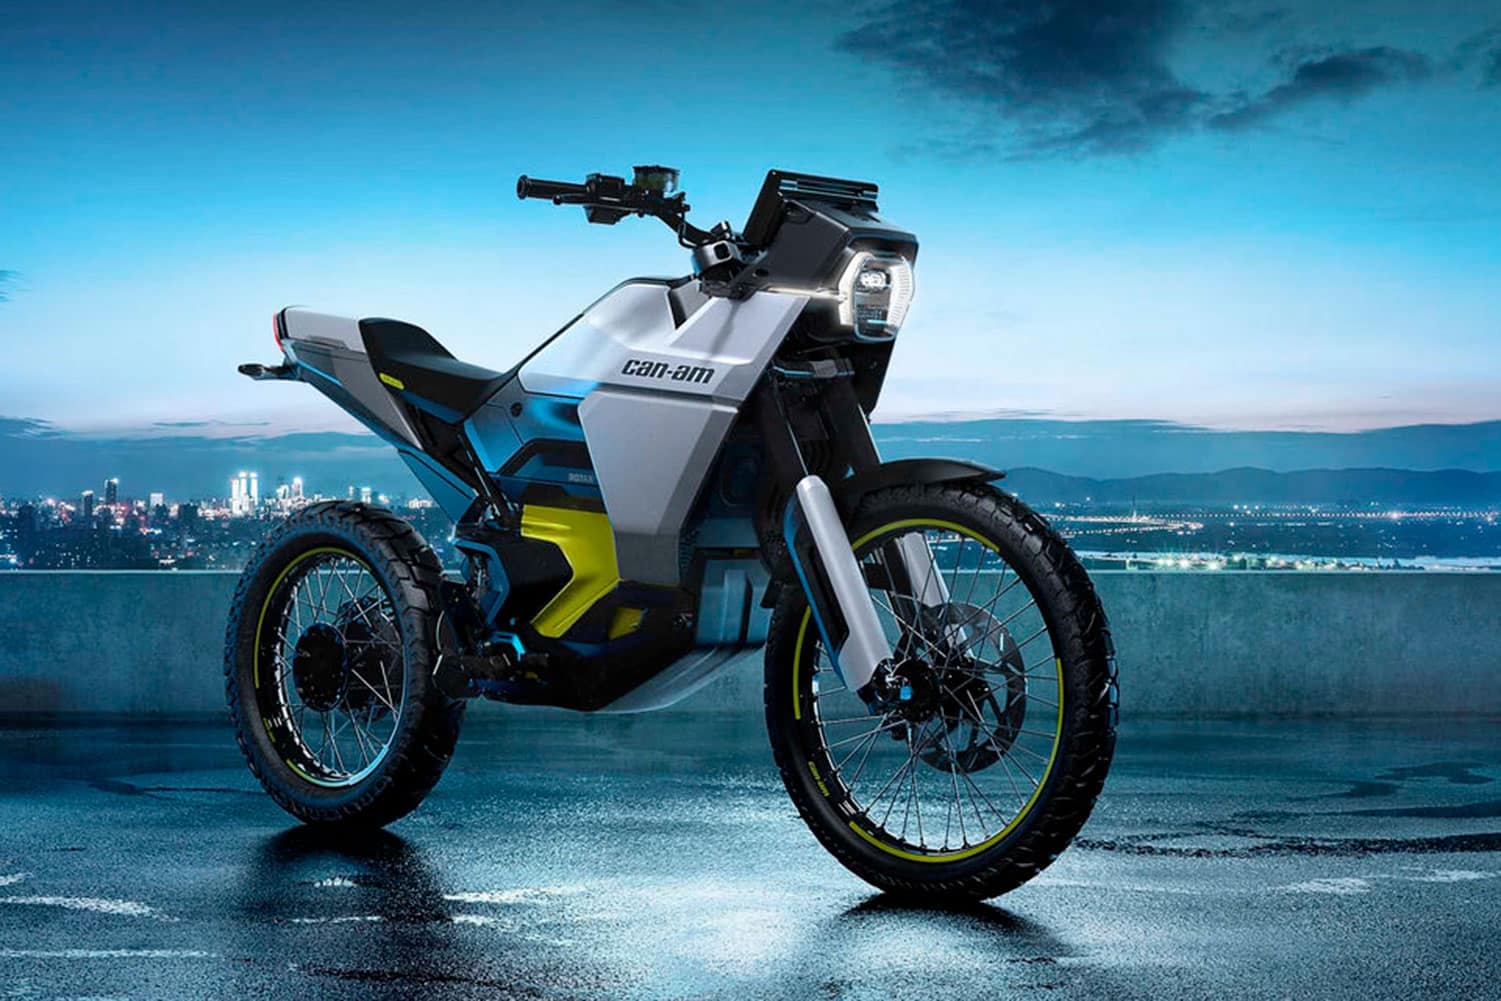 Nueva moto Can-Am eléctrica Origin